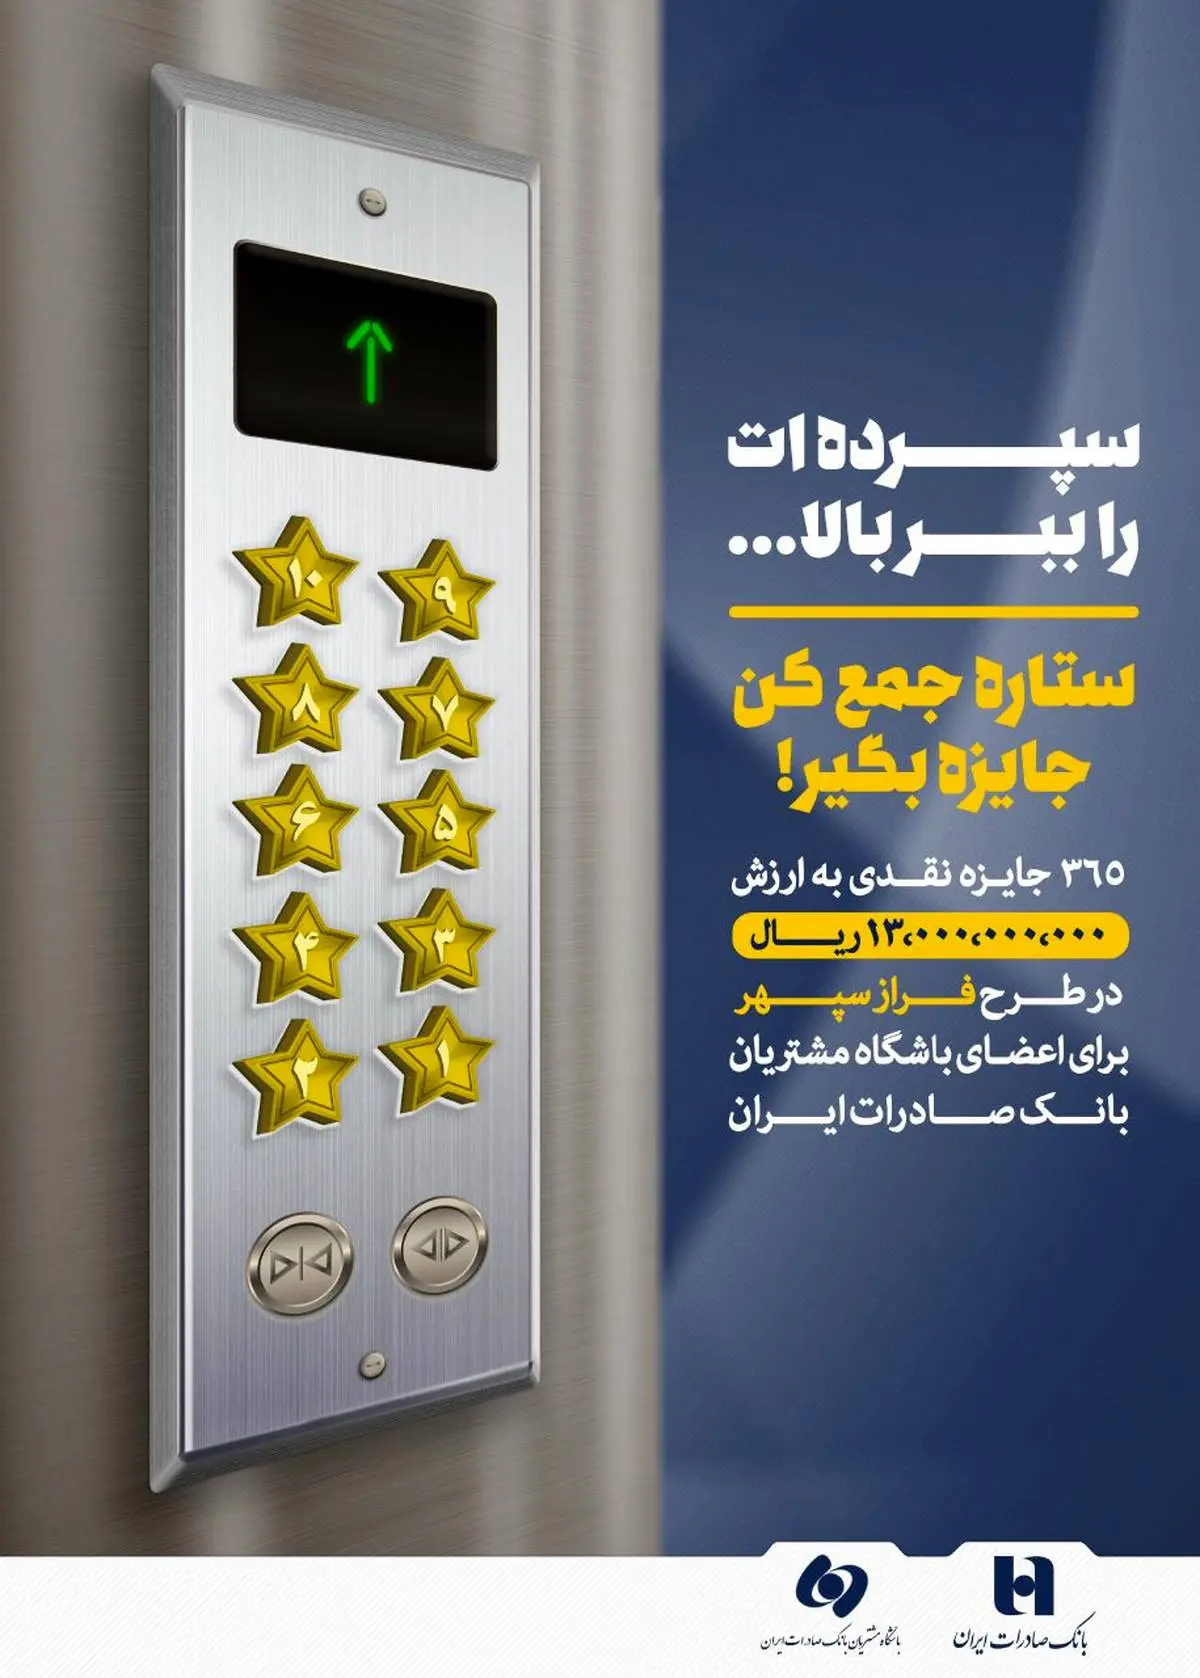 استقبال از طرح «فراز سپهر» باشگاه مشتریان بانک صادرات ایران 